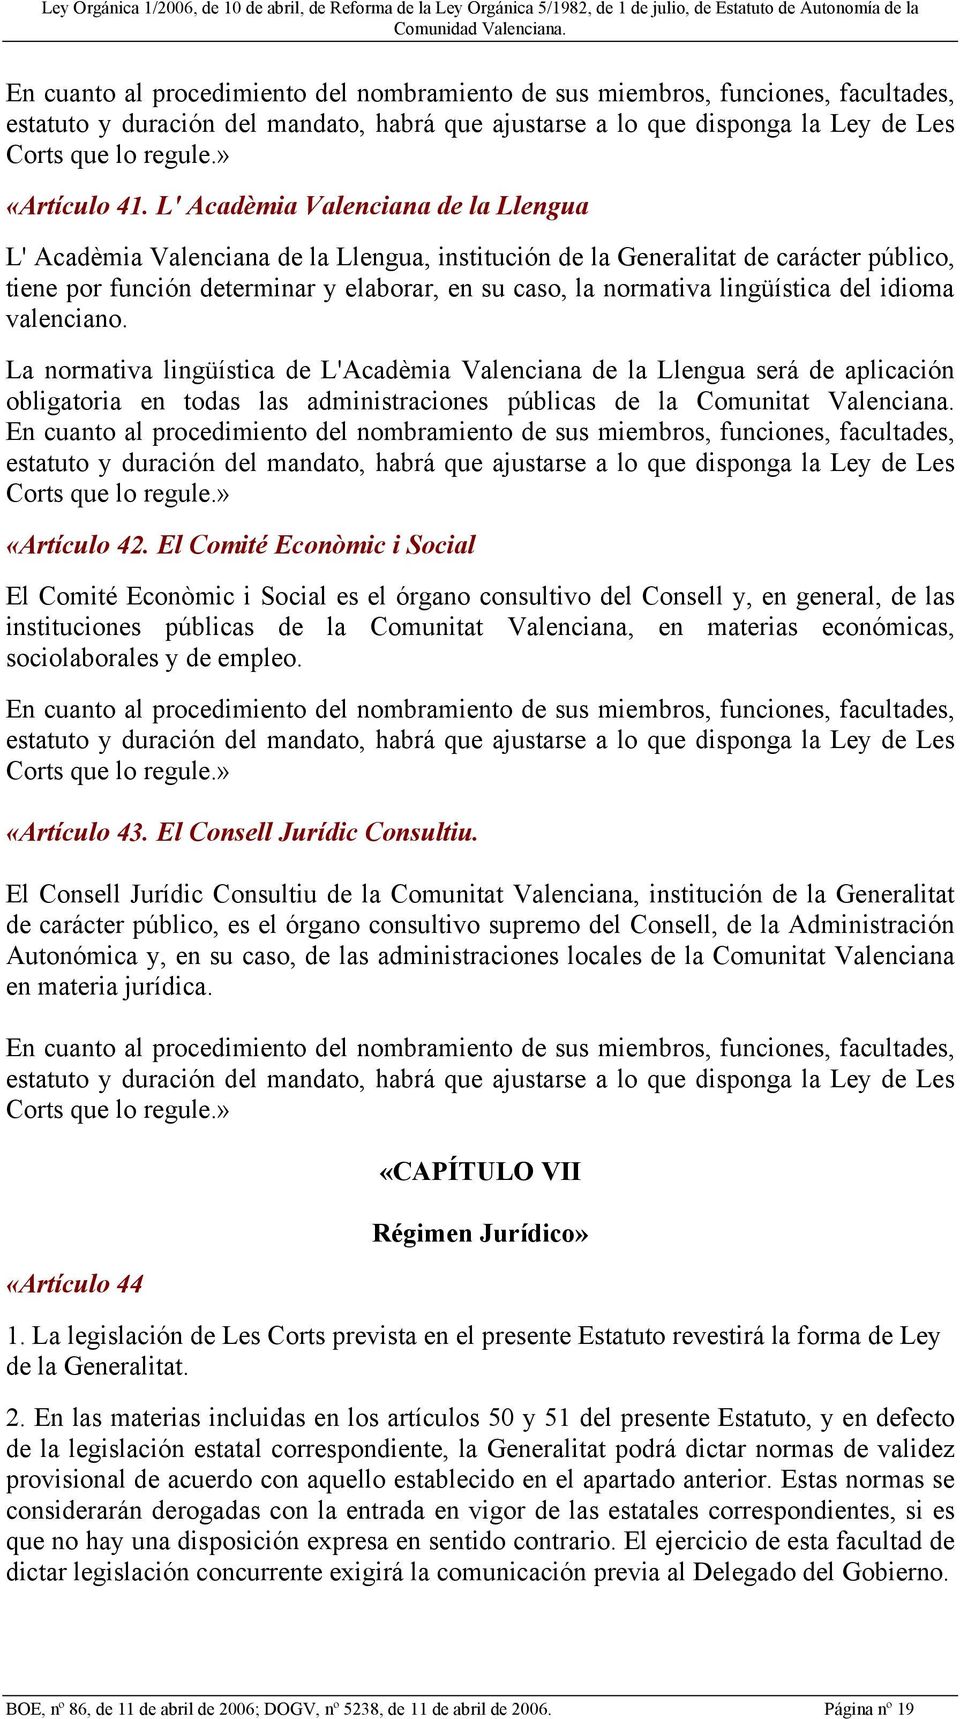 L' Acadèmia Valenciana de la Llengua L' Acadèmia Valenciana de la Llengua, institución de la Generalitat de carácter público, tiene por función determinar y elaborar, en su caso, la normativa